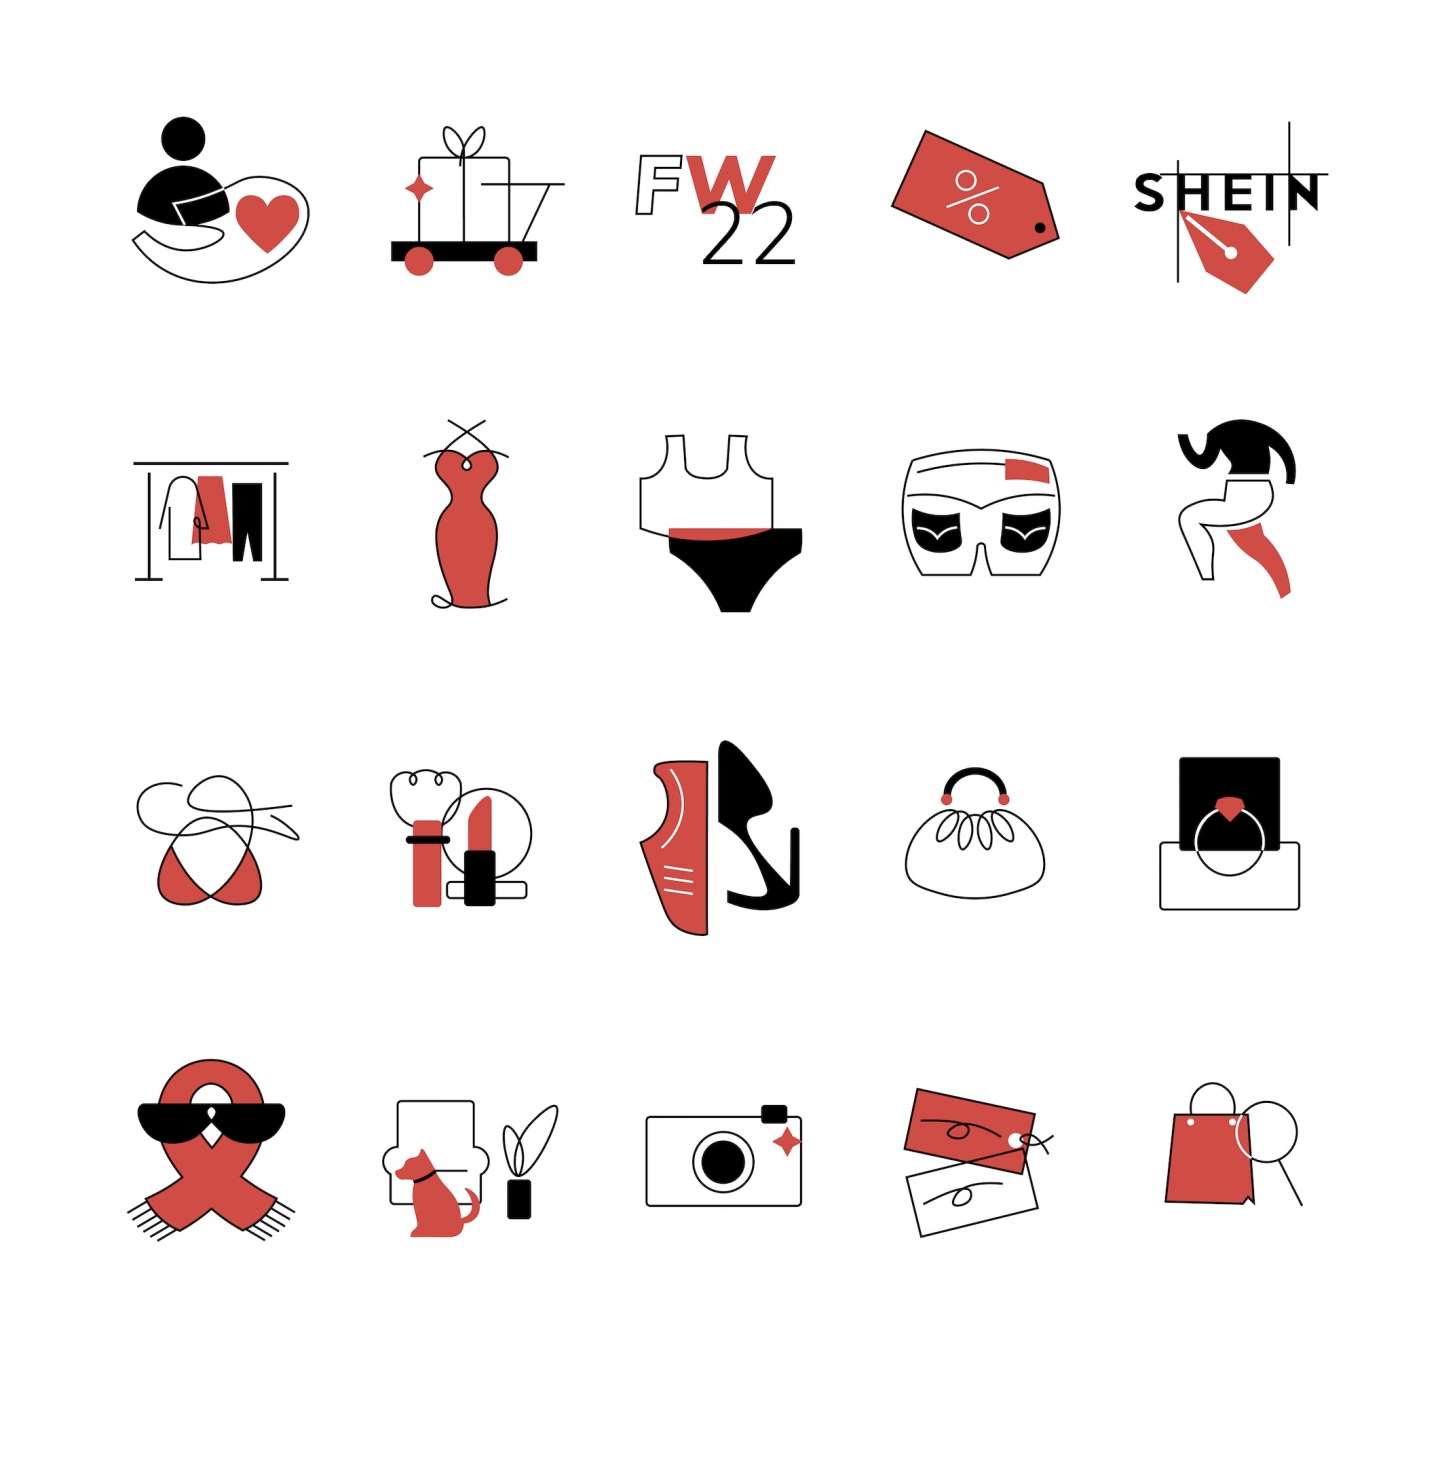 SHEIN Icon Design by Xinlin Cui – SVA Design